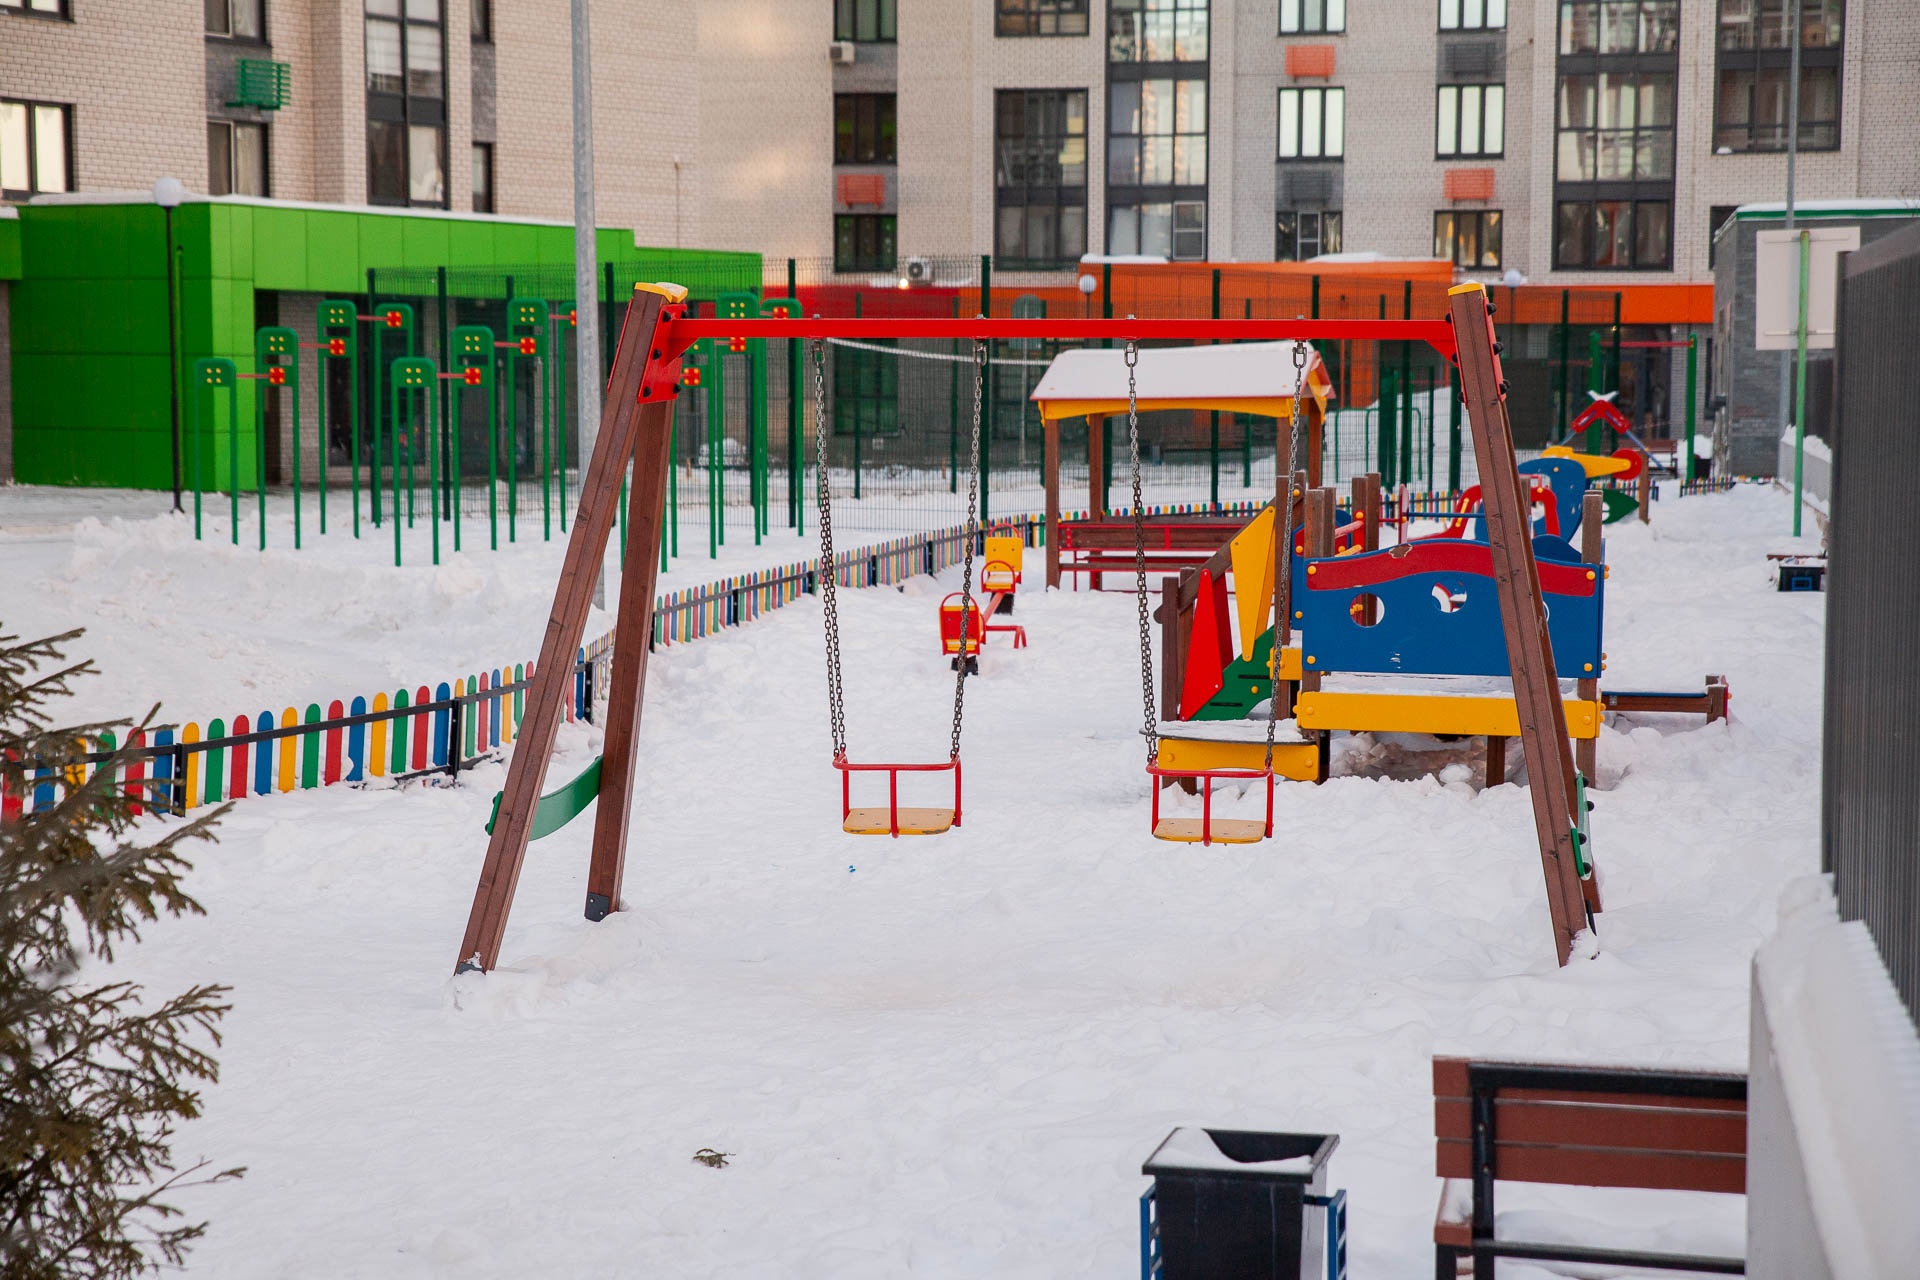 Детские площадки во дворе самые обычные: пластиково-деревянные и аляпистые. Но они в хорошем состоянии, всё работает